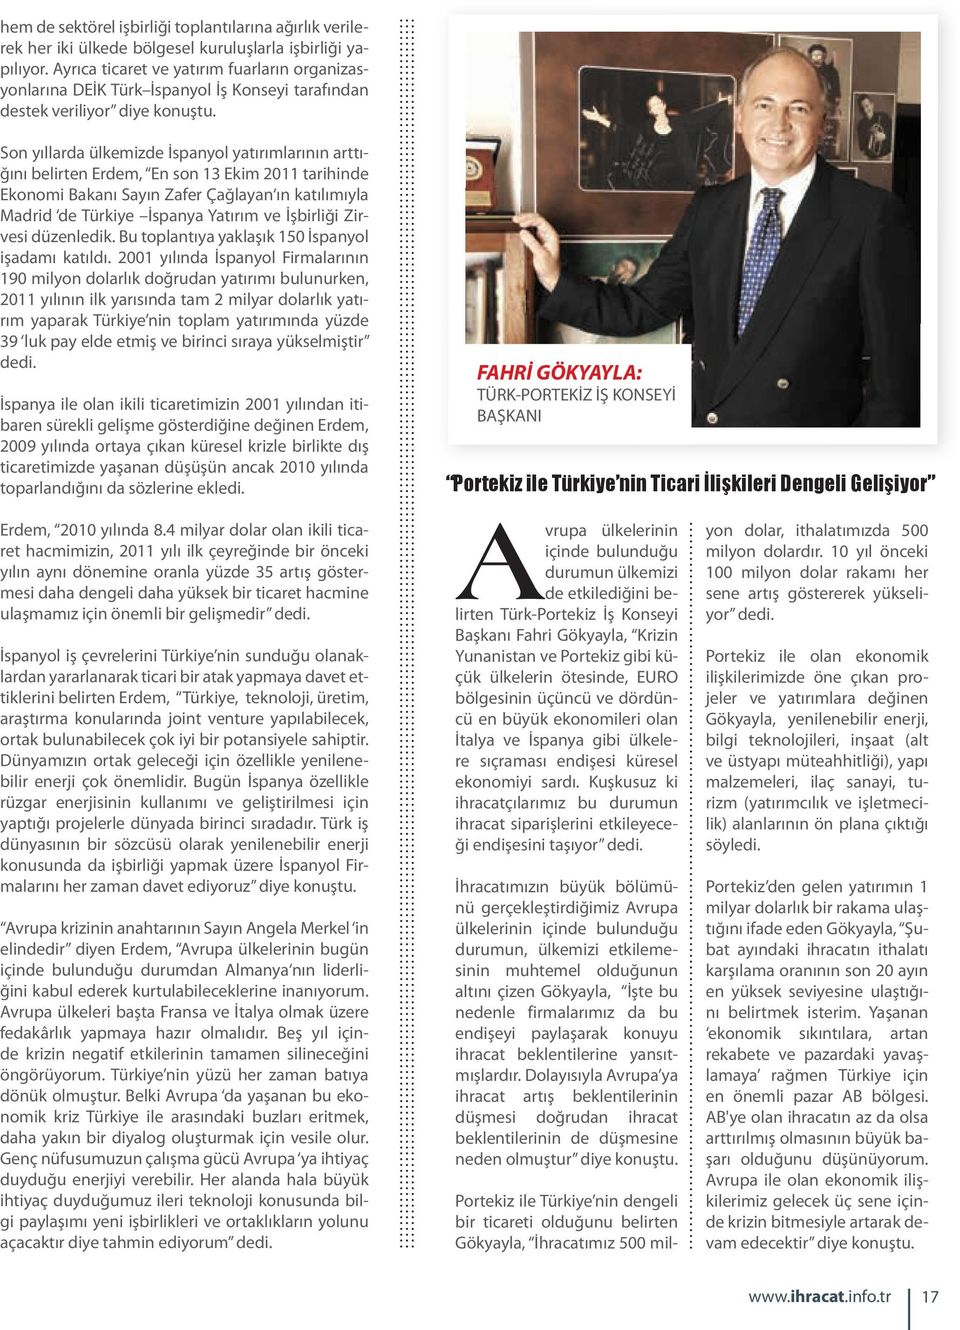 Son yıllarda ülkemizde İspanyol yatırımlarının arttığını belirten Erdem, En son 13 Ekim 2011 tarihinde Ekonomi Bakanı Sayın Zafer Çağlayan ın katılımıyla Madrid de Türkiye İspanya Yatırım ve